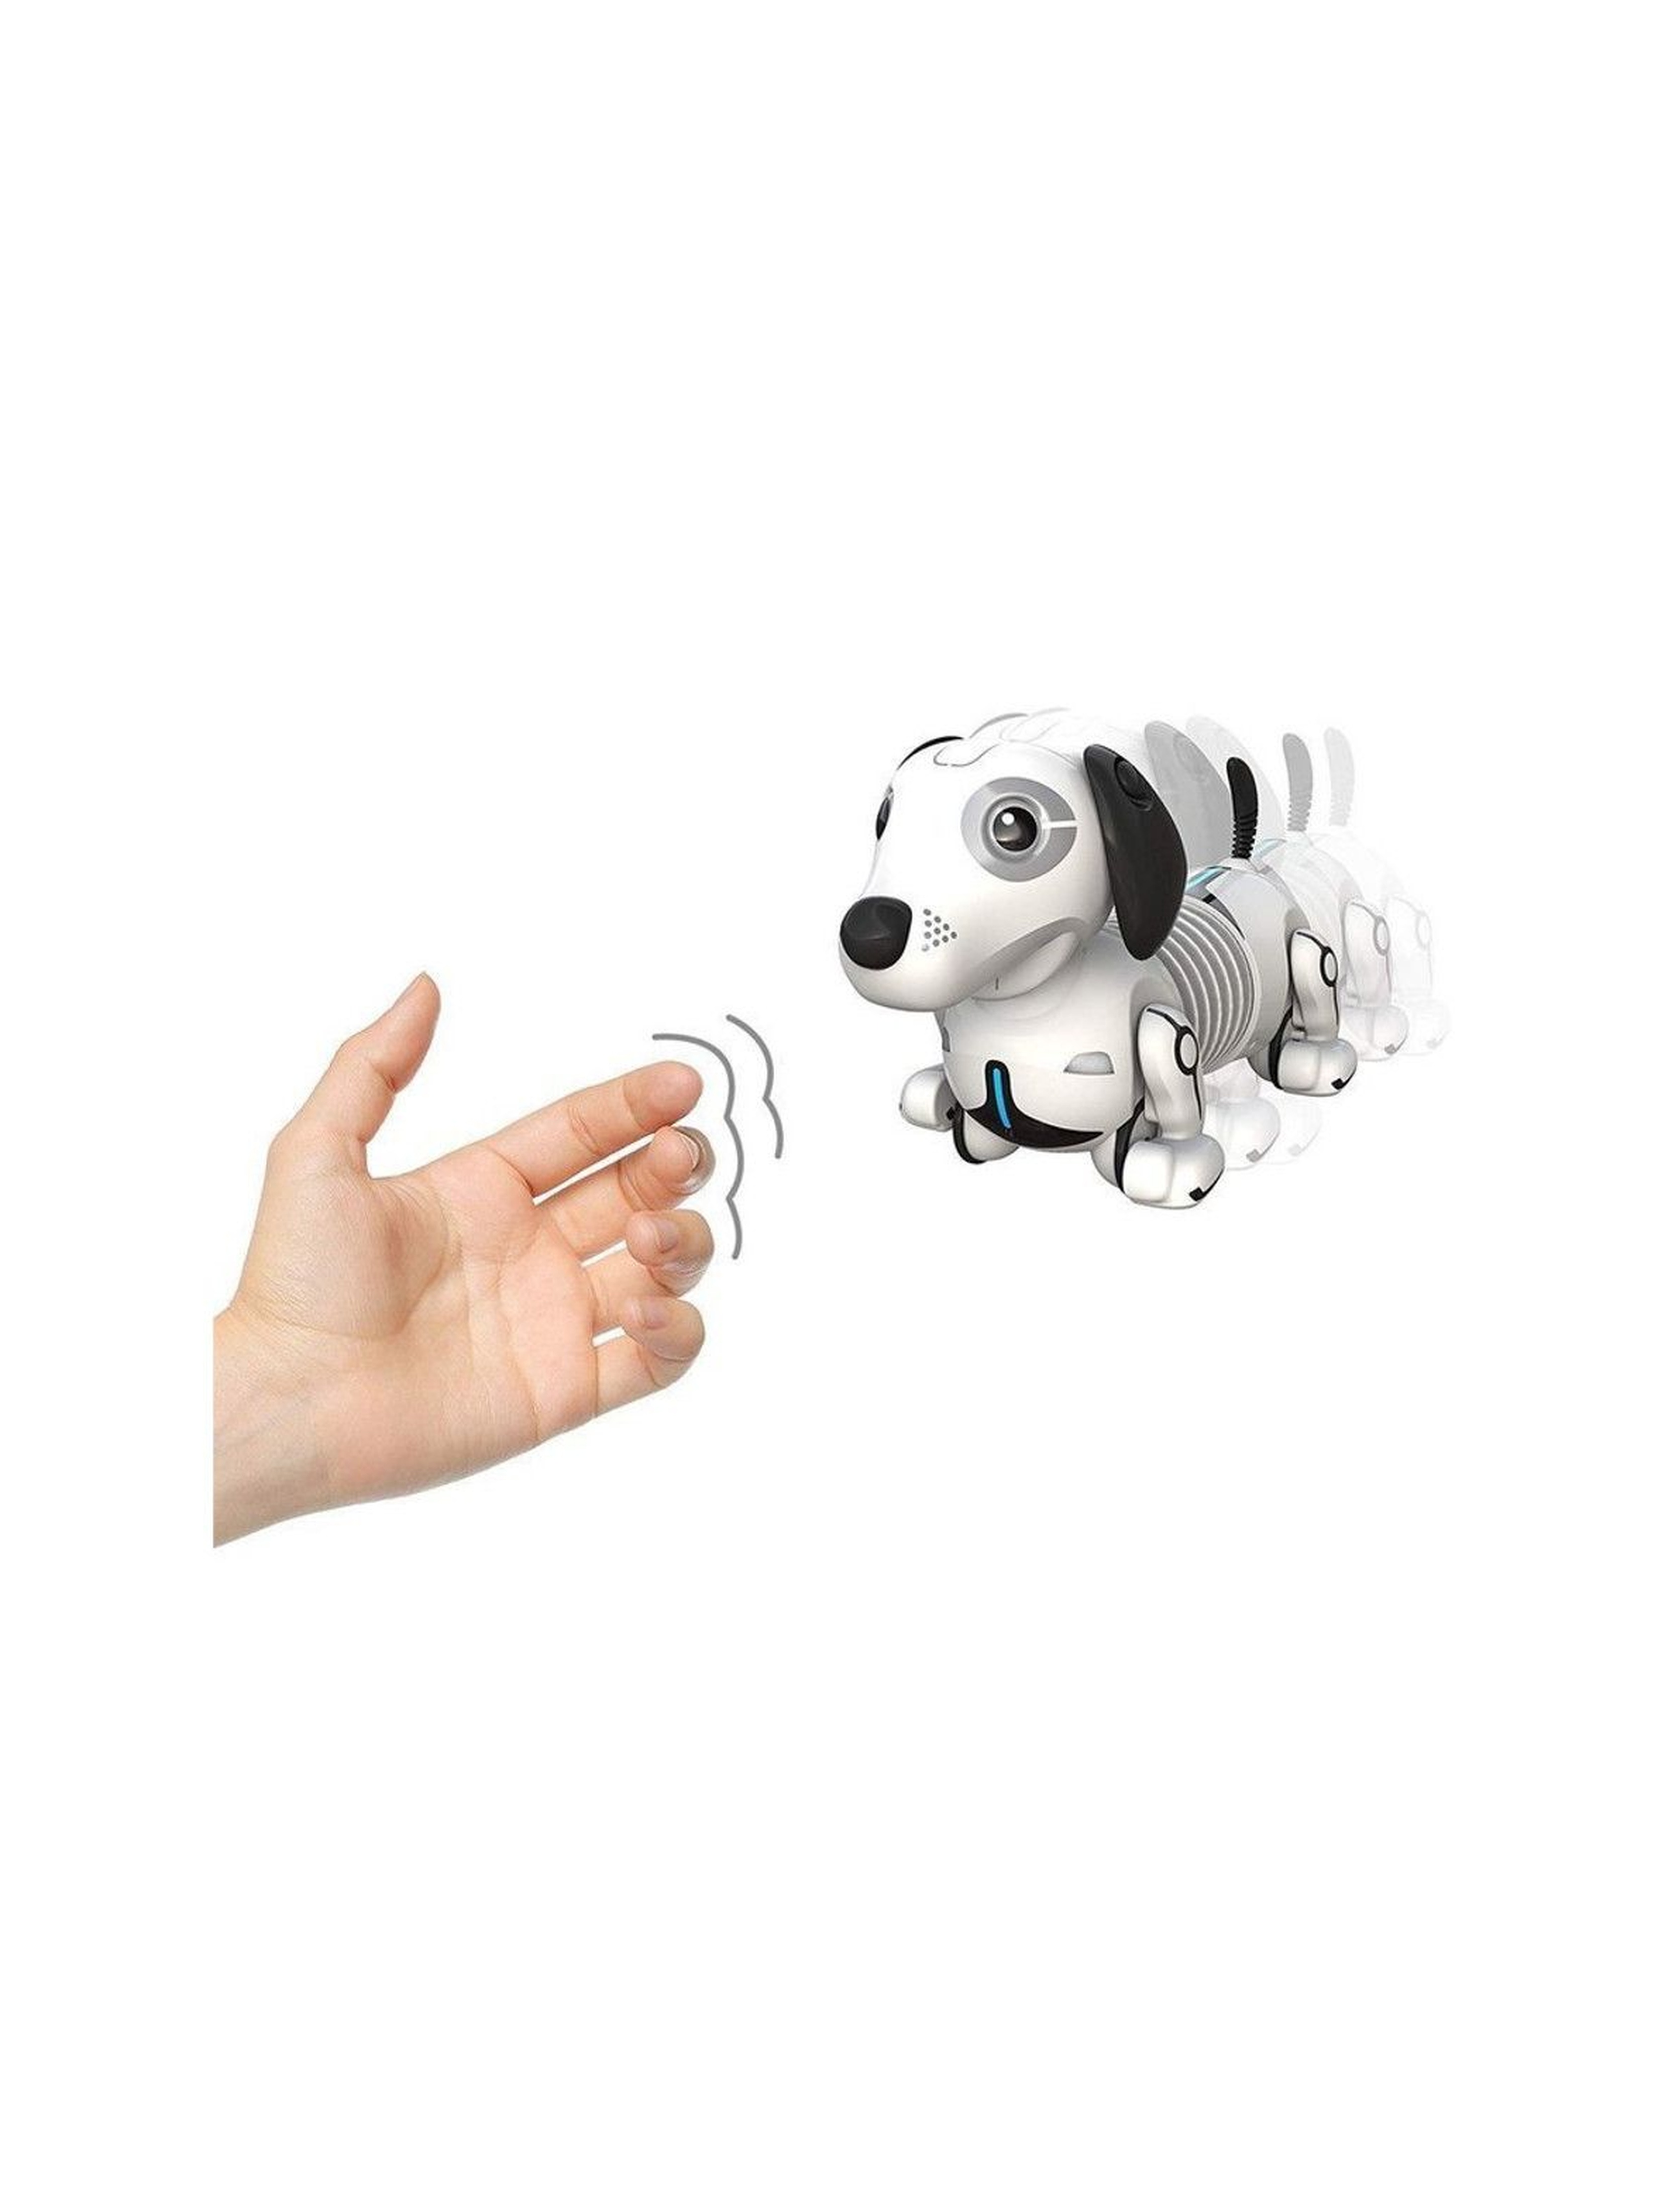 Silverlit robot-piesek Zigito- zabawka interaktywna wiek 5+